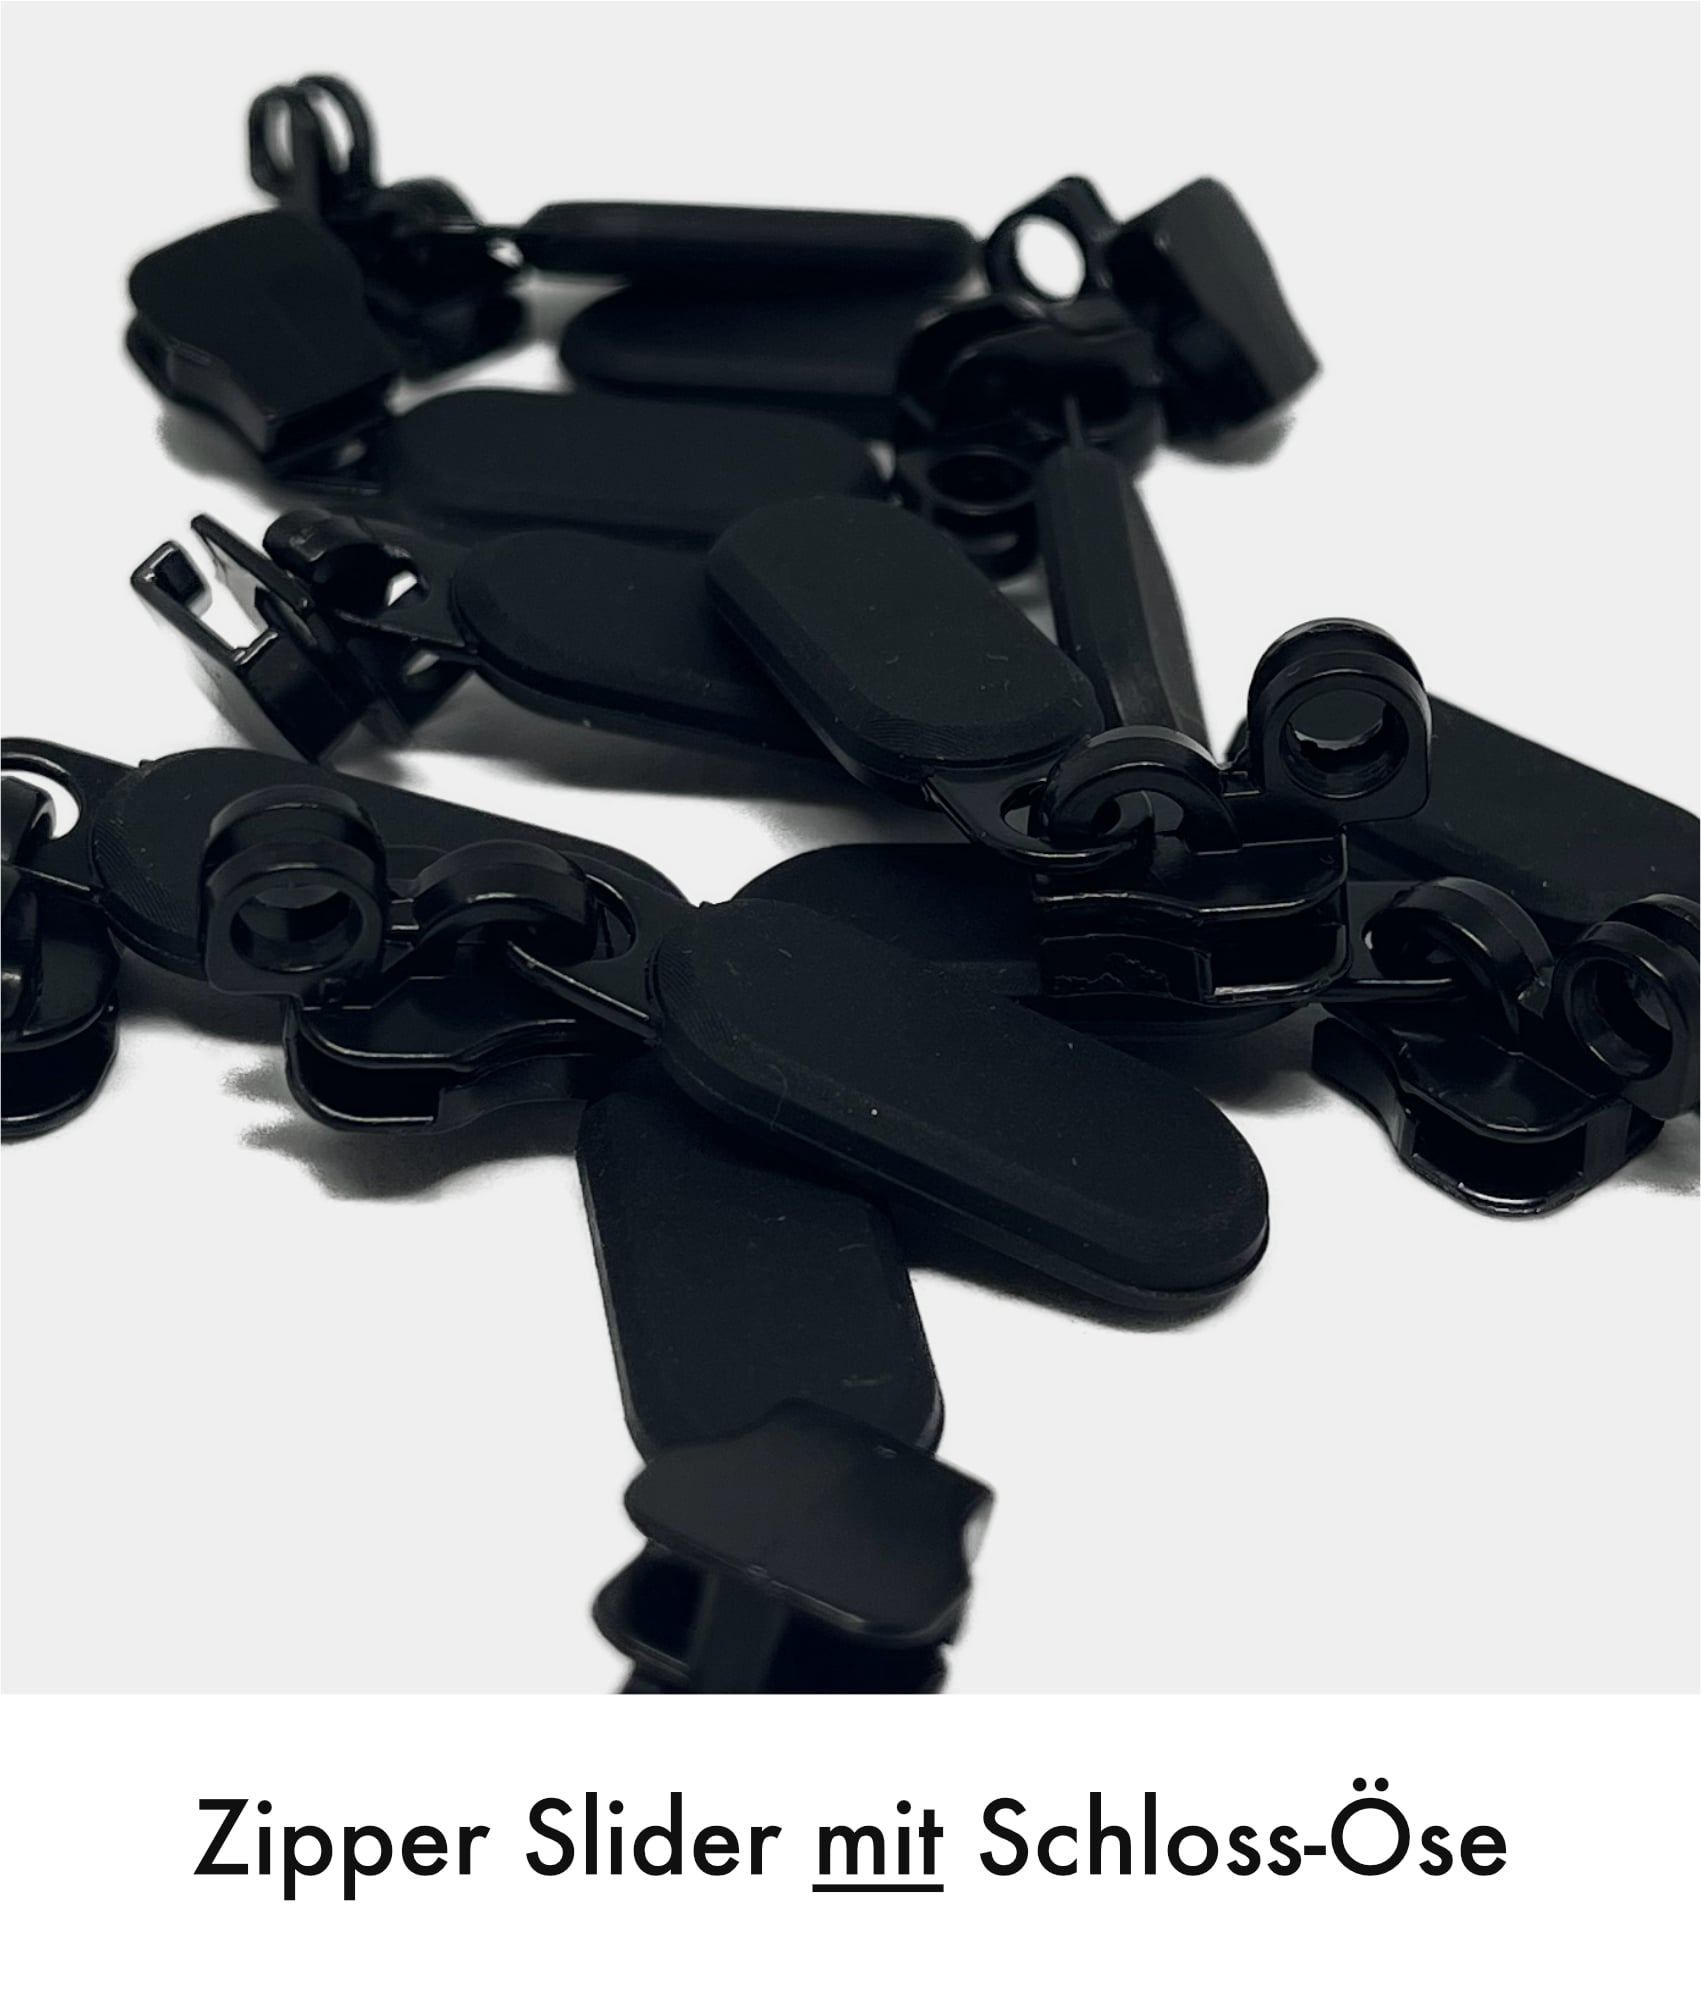 Zipper puller